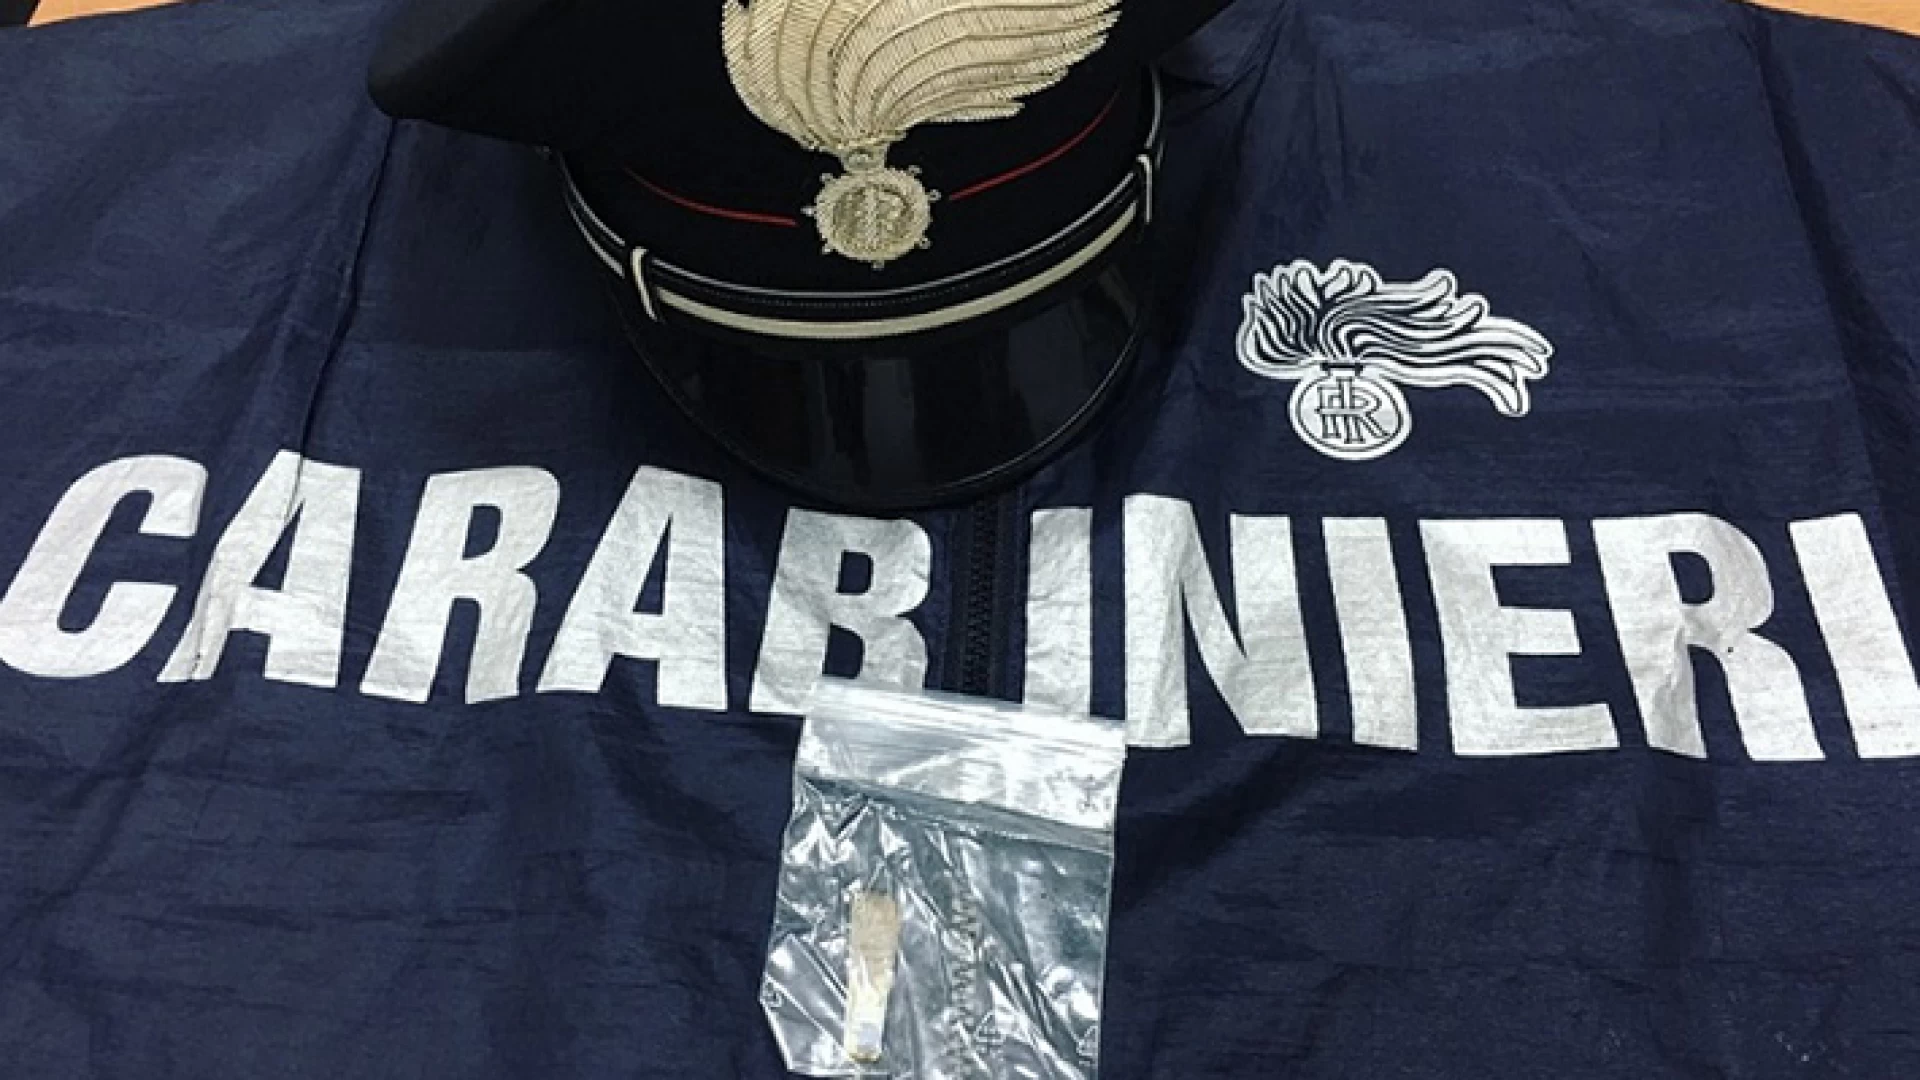 Isernia: Nasconde dosi di hashish nei guanti, 22enne denunciato dai Carabinieri per detenzione e spaccio di stupefacenti nei pressi della Stazione Ferroviaria.